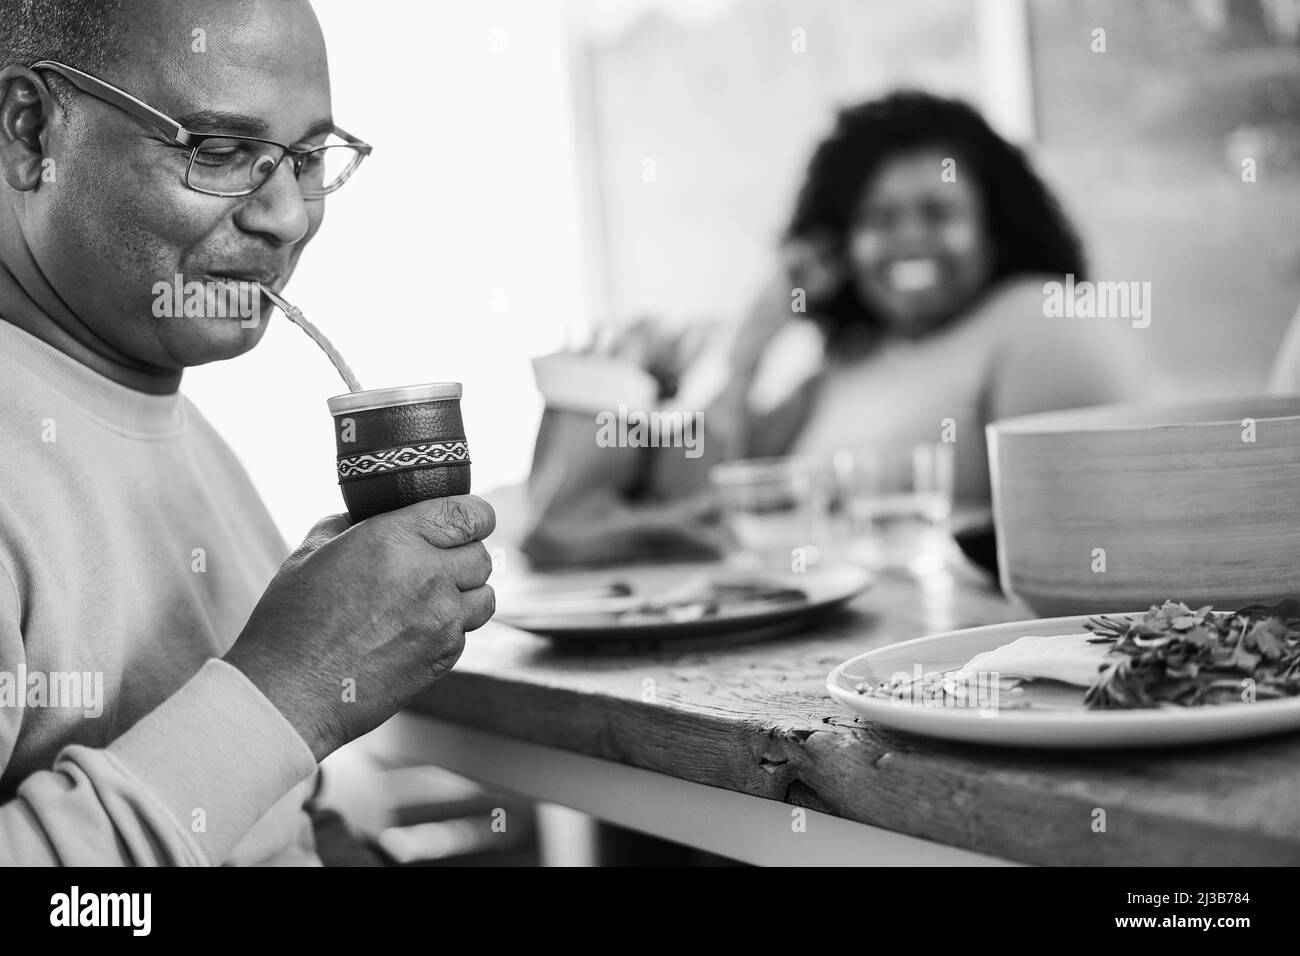 Heureux père noir buvant yerba mate pendant le déjeuner à la maison - foyer principal sur la tasse - montage noir et blanc Banque D'Images